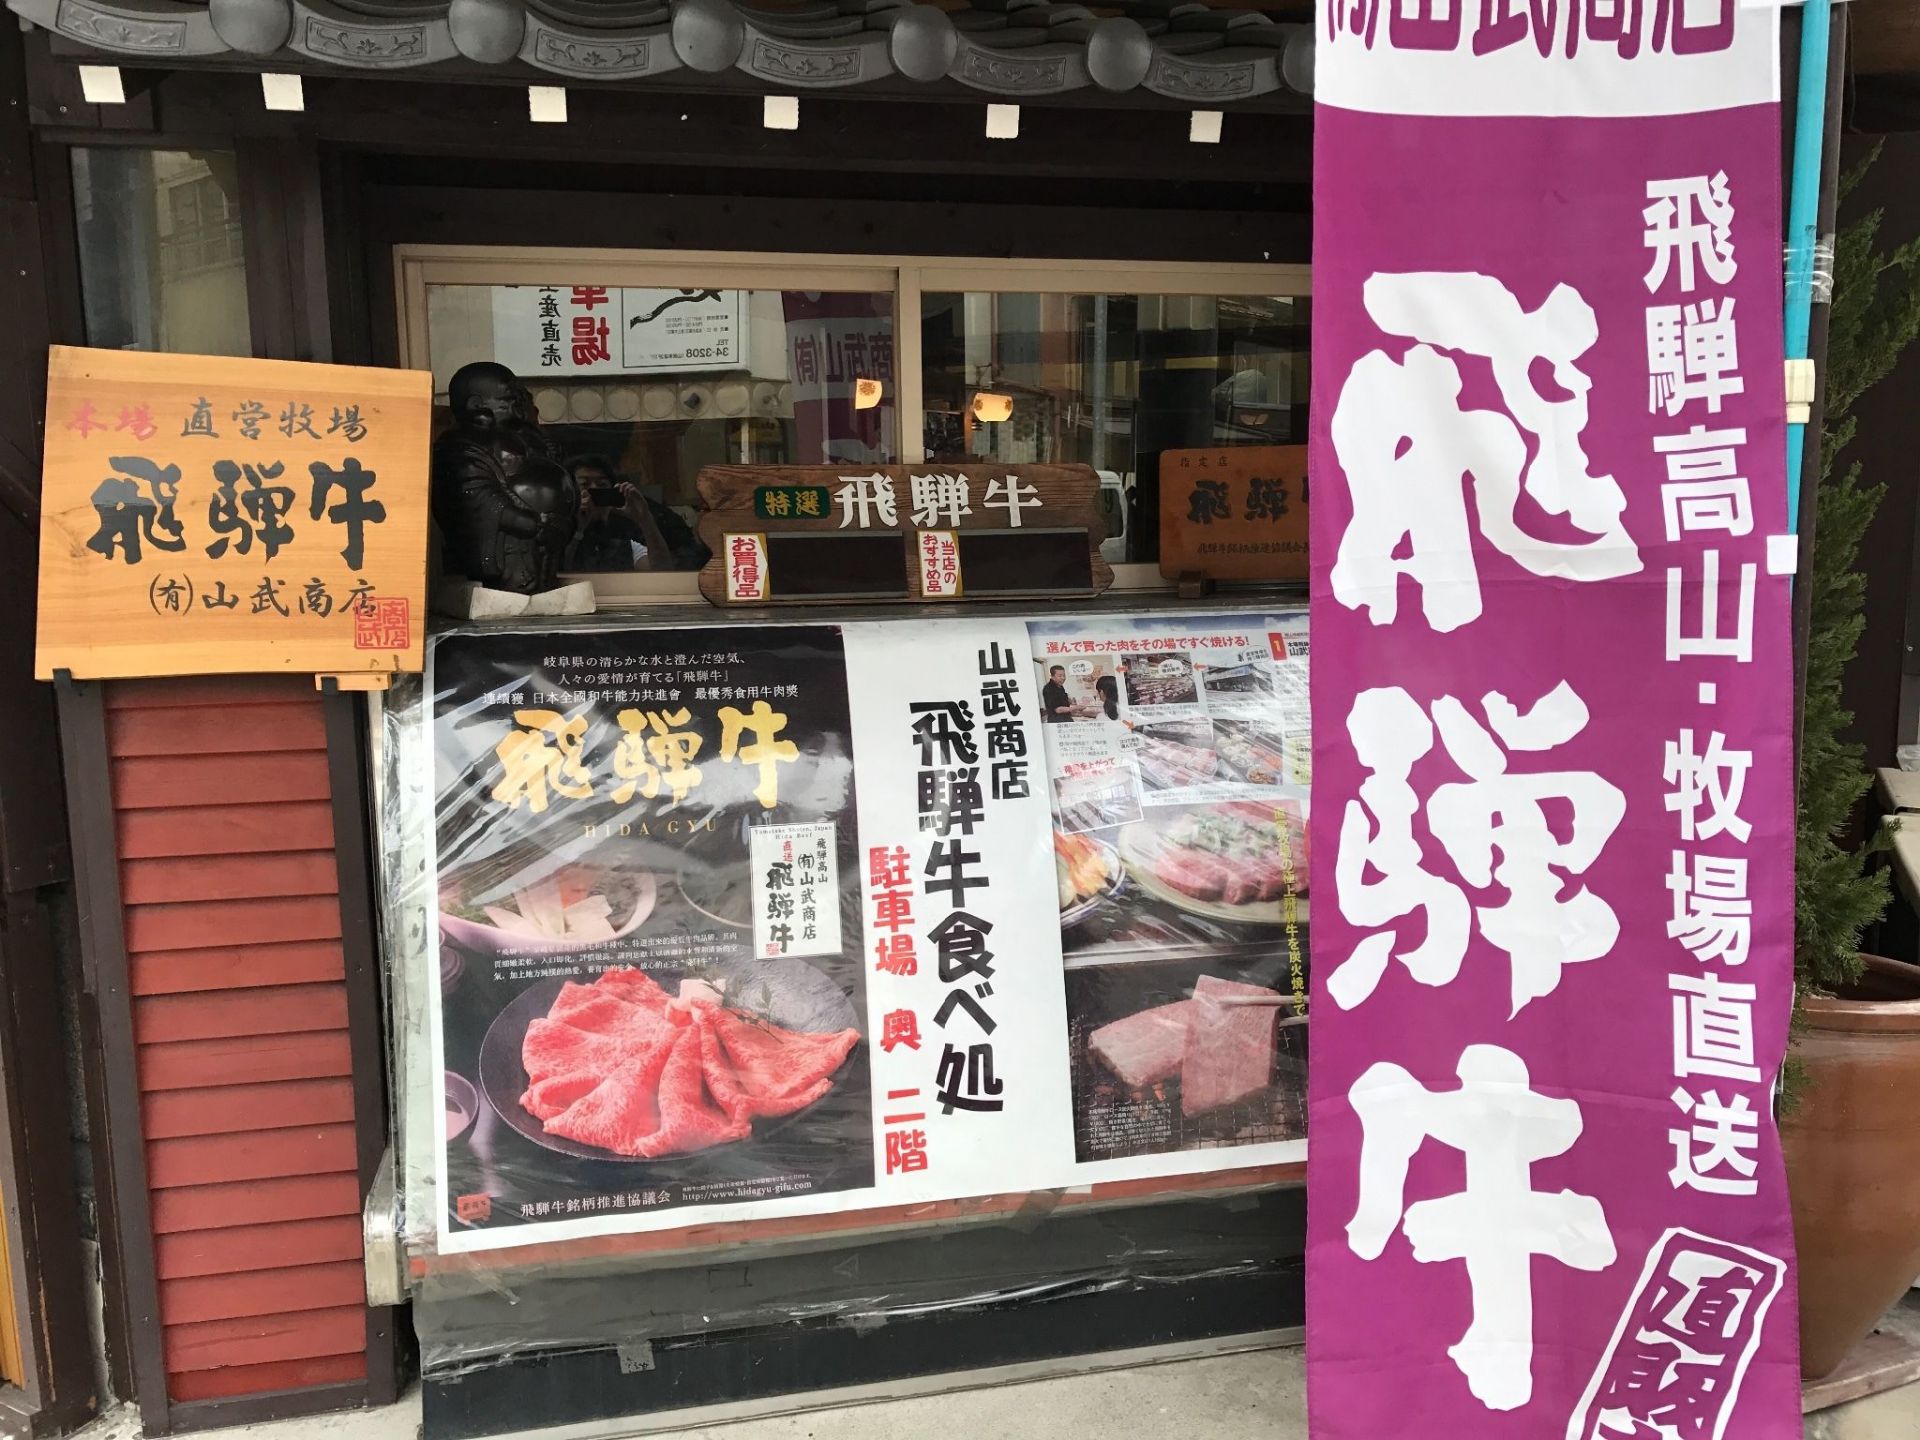 名古屋的飞弹牛是著名日本的和牛肉，这些牛肉都可以生吃，蘸上这里特制的酱料，味道真的超级的鲜美。当然价